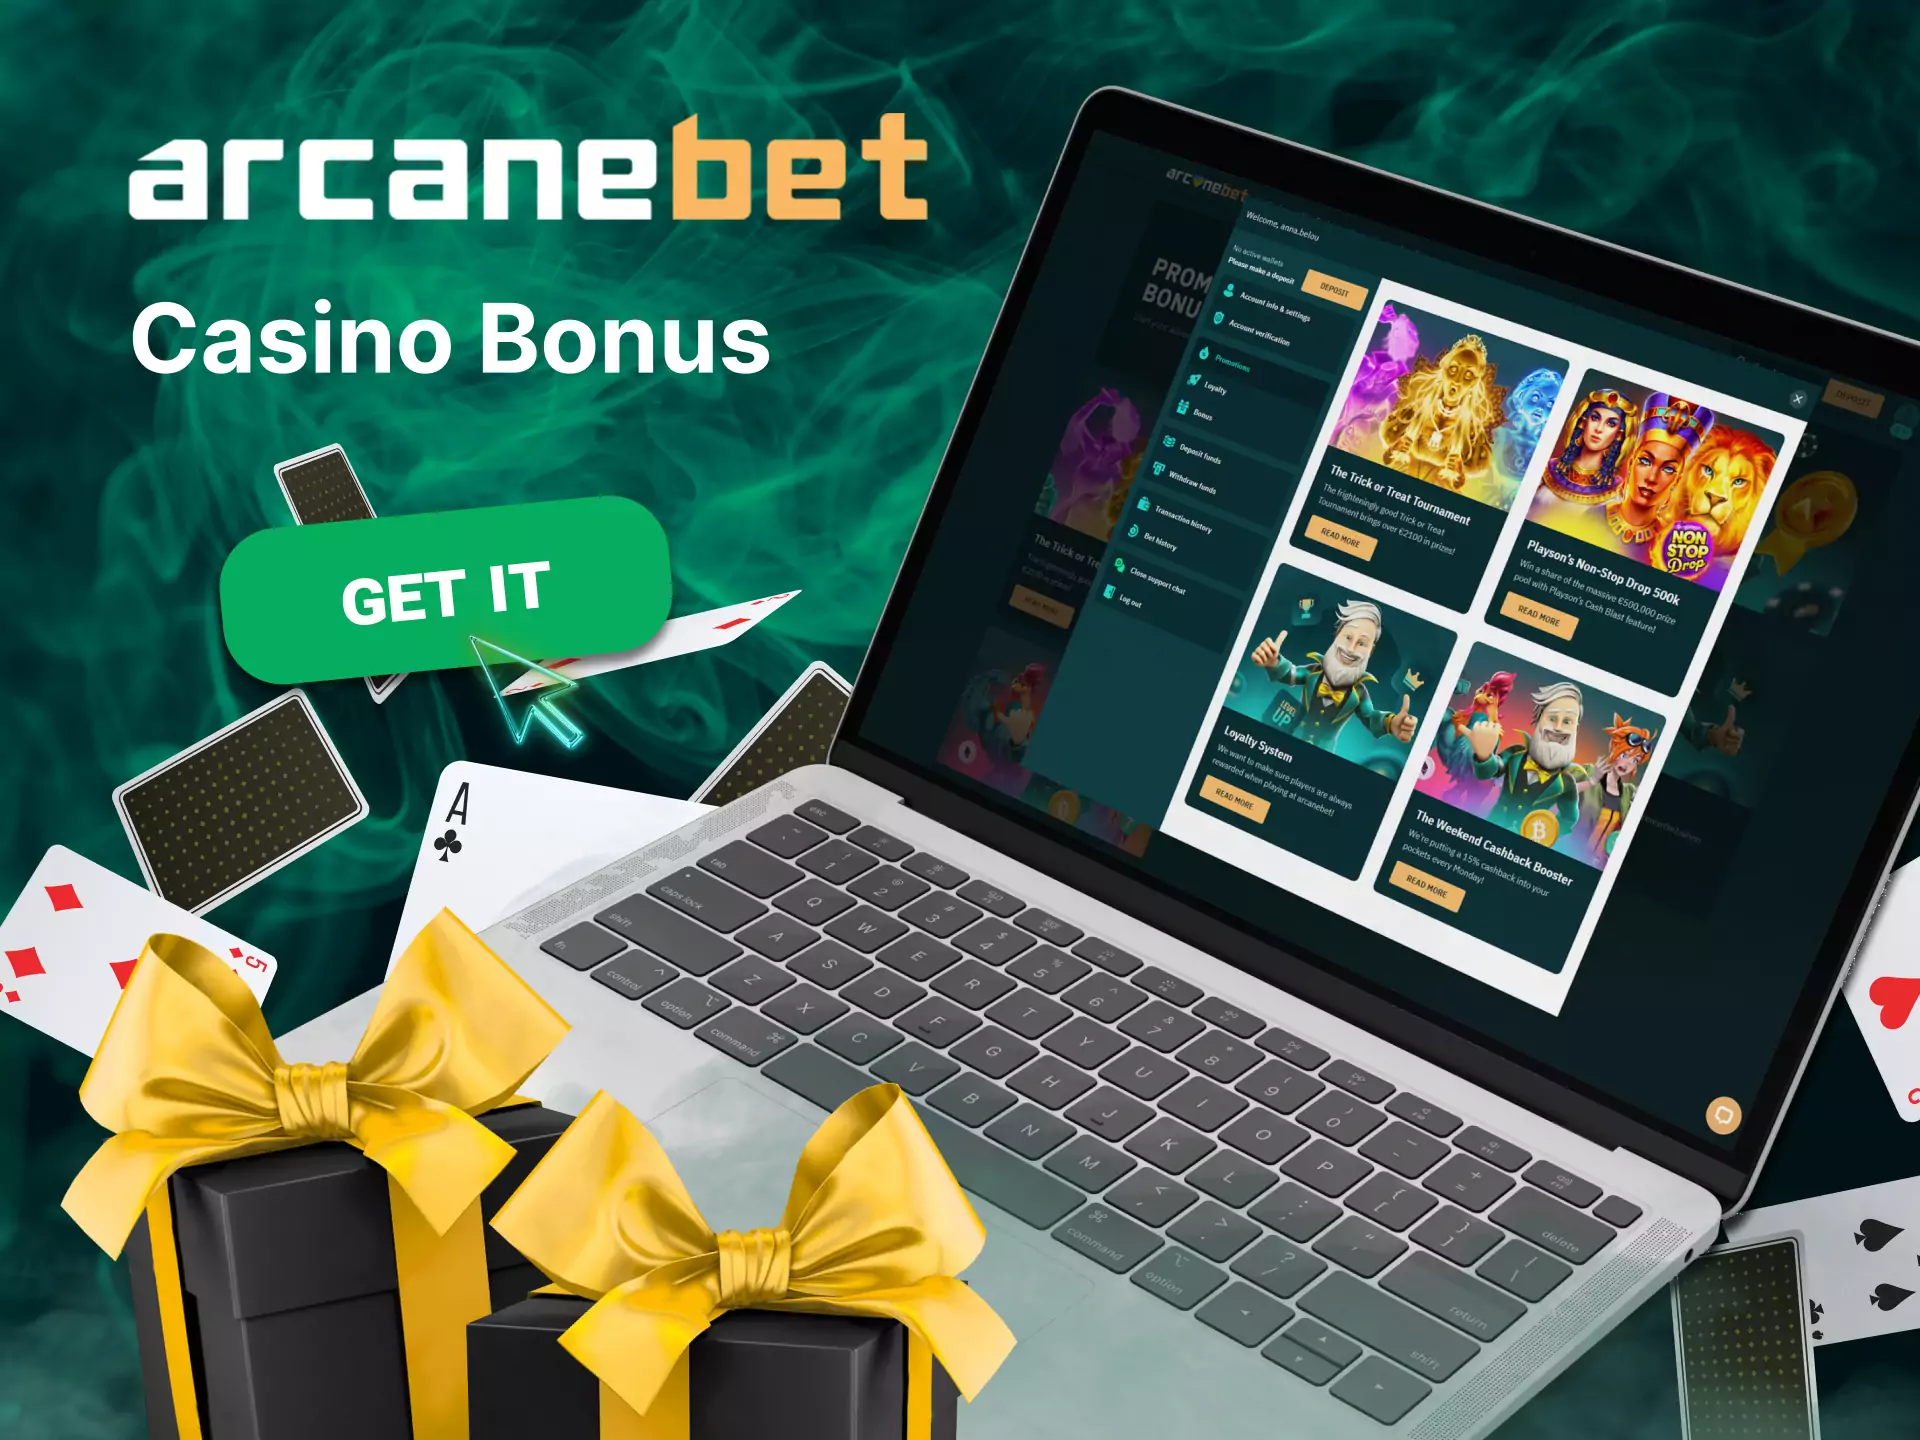 Get a special bonus for the Arcanebet casino.